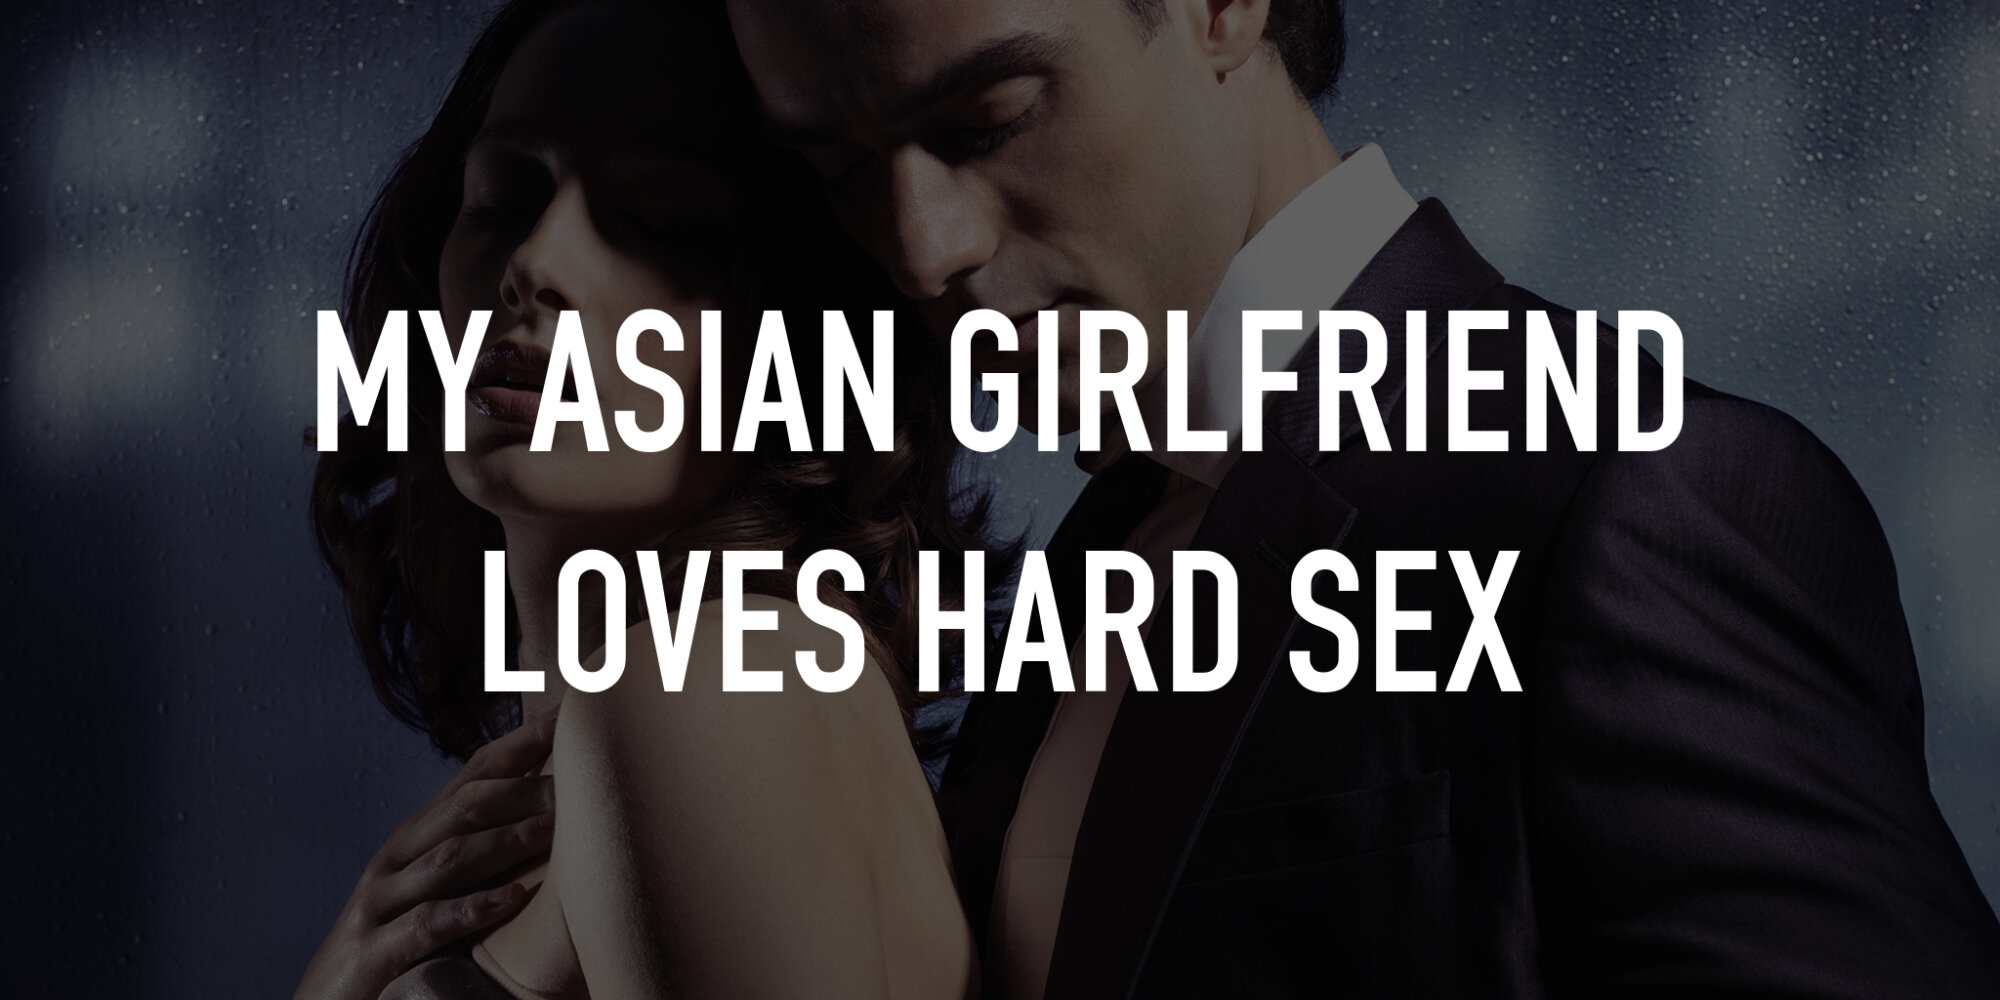 christian brierley share my asian girlfriend sex photos